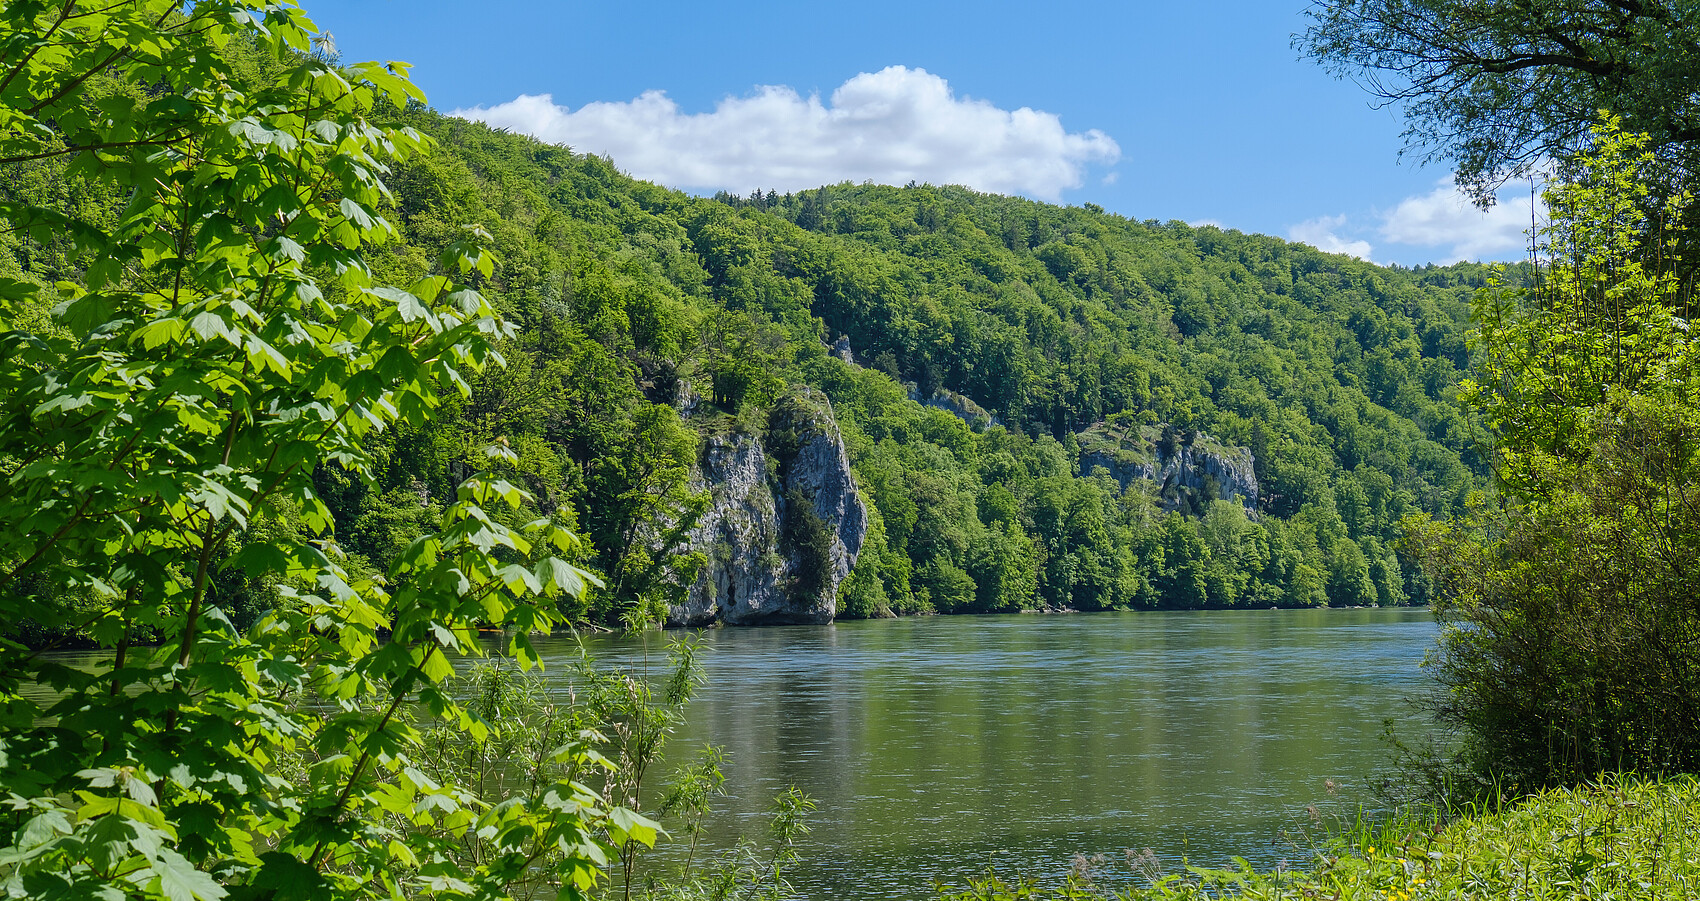 Blick von einem grün bewachsenen Ufer der Donau auf die andere Seite